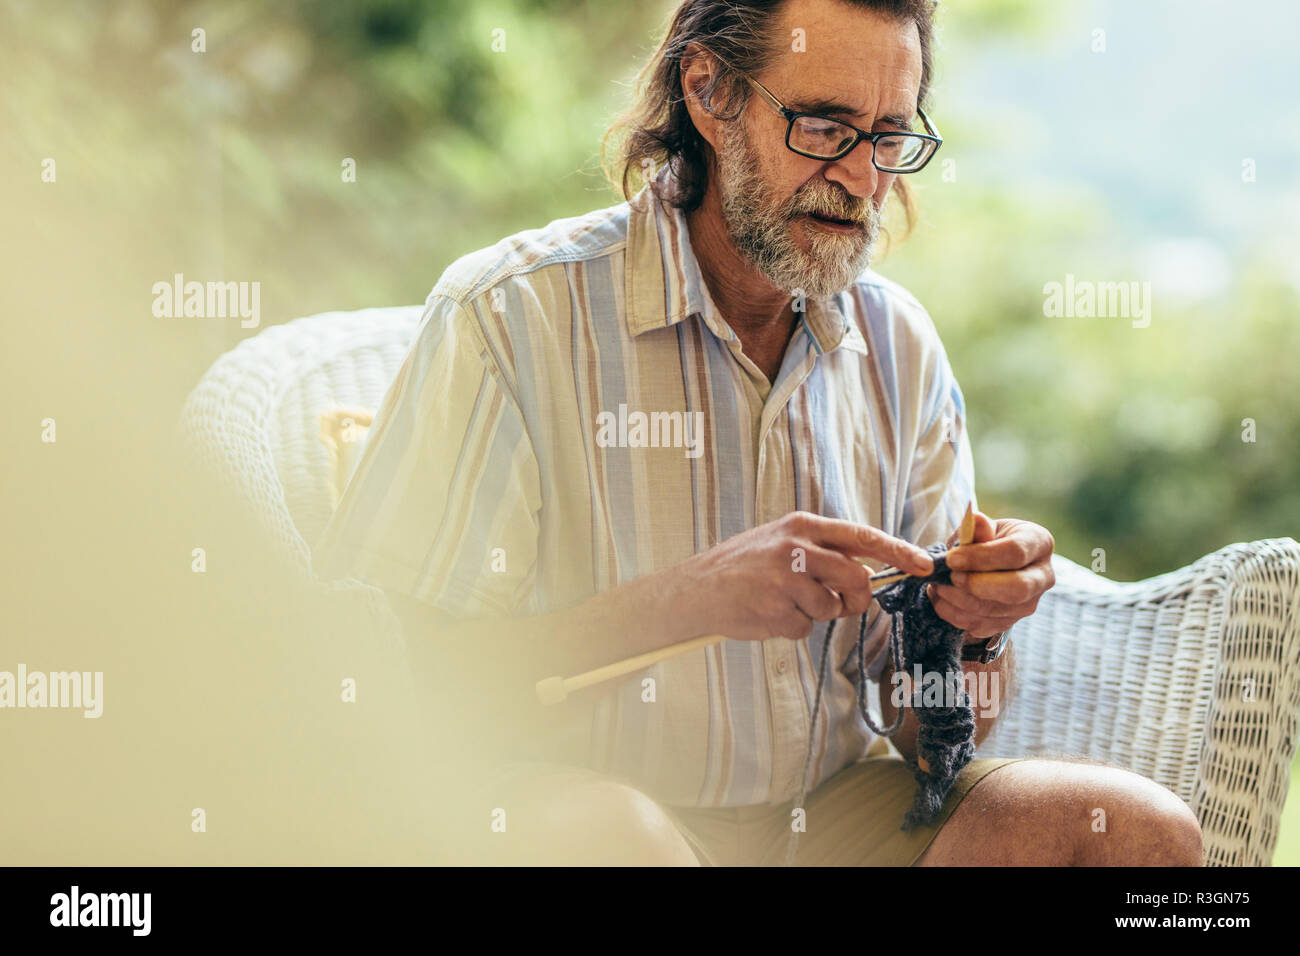 Uomo anziano con la barba seduto su una sedia e la maglia. Il vecchio uomo maglia con aghi e filati di lana. Foto Stock